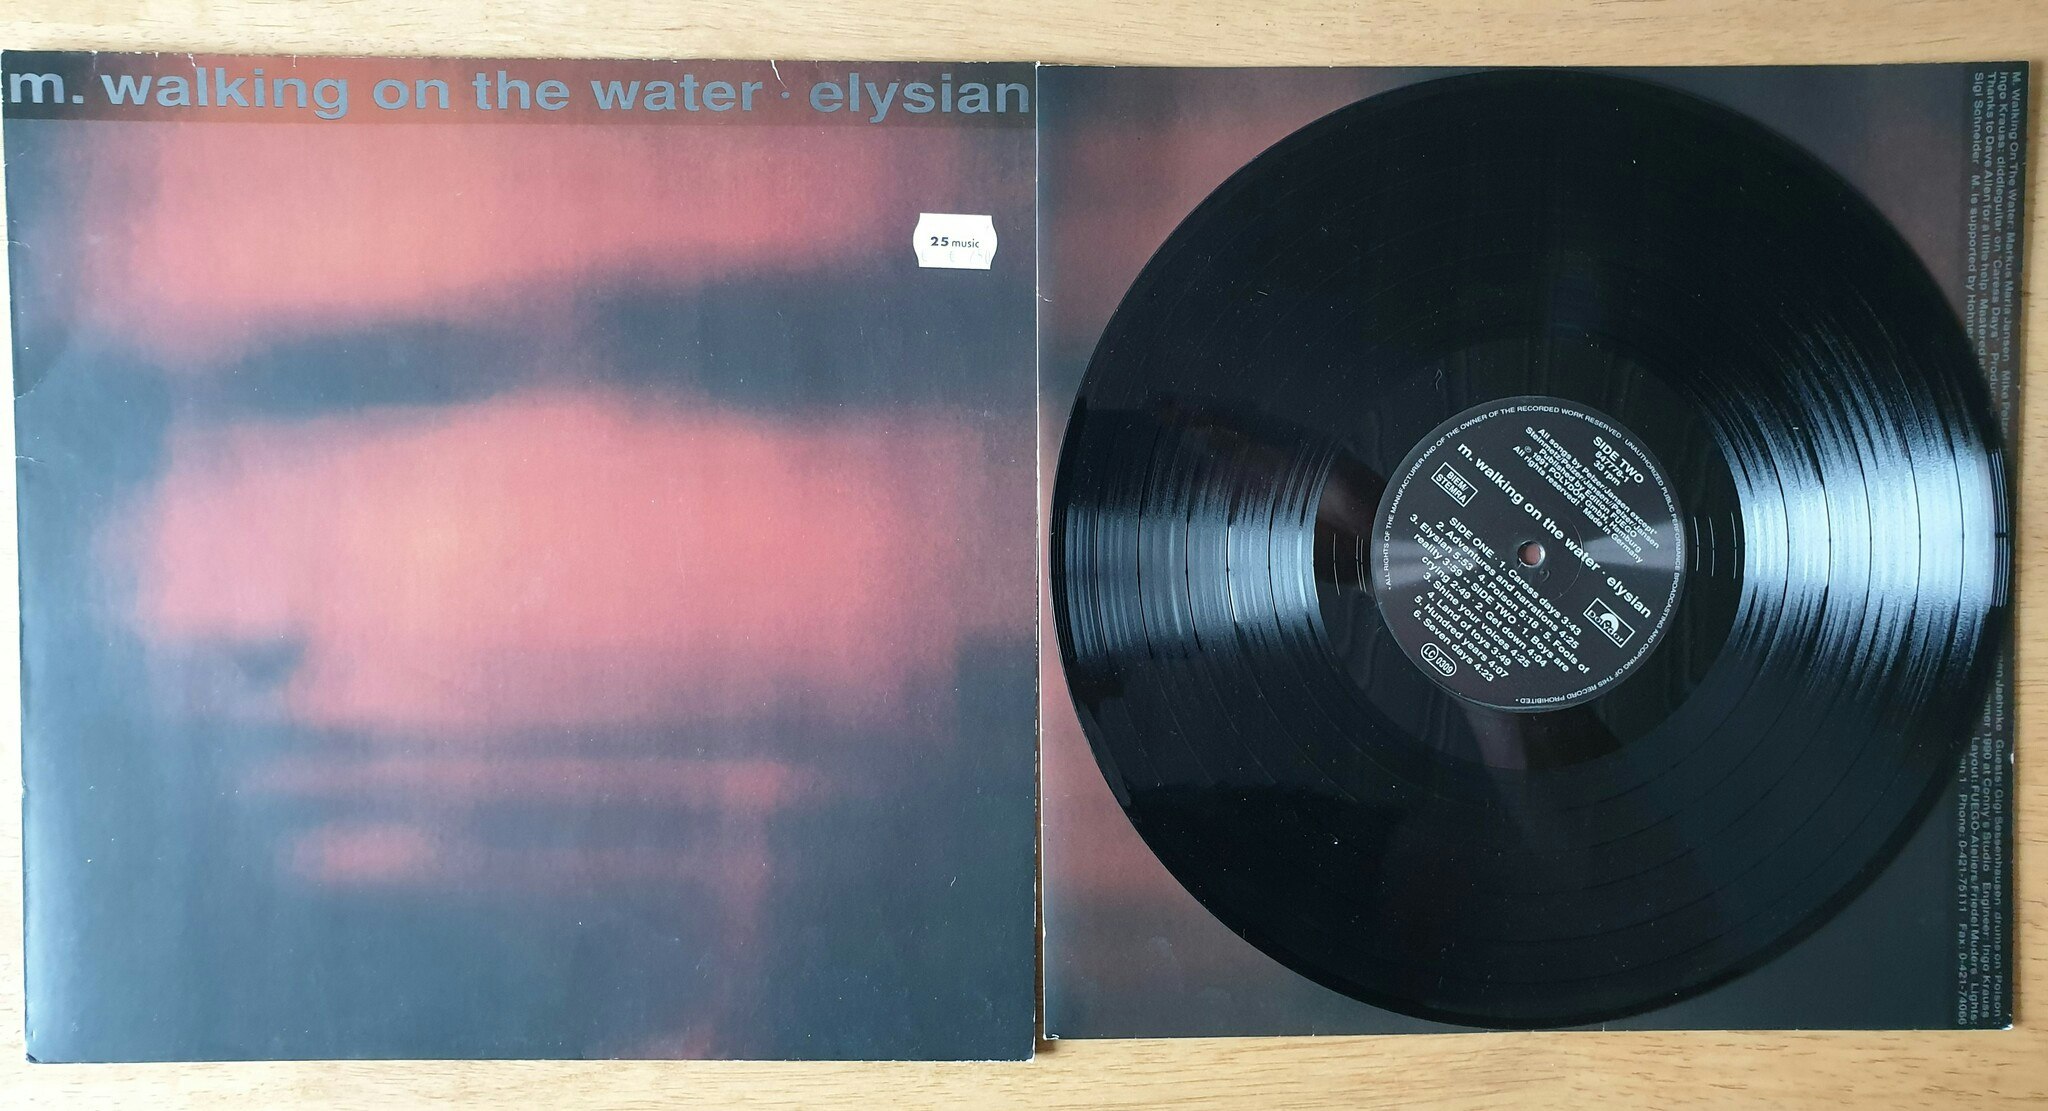 Elysian, m. walking on the water. Vinyl LP